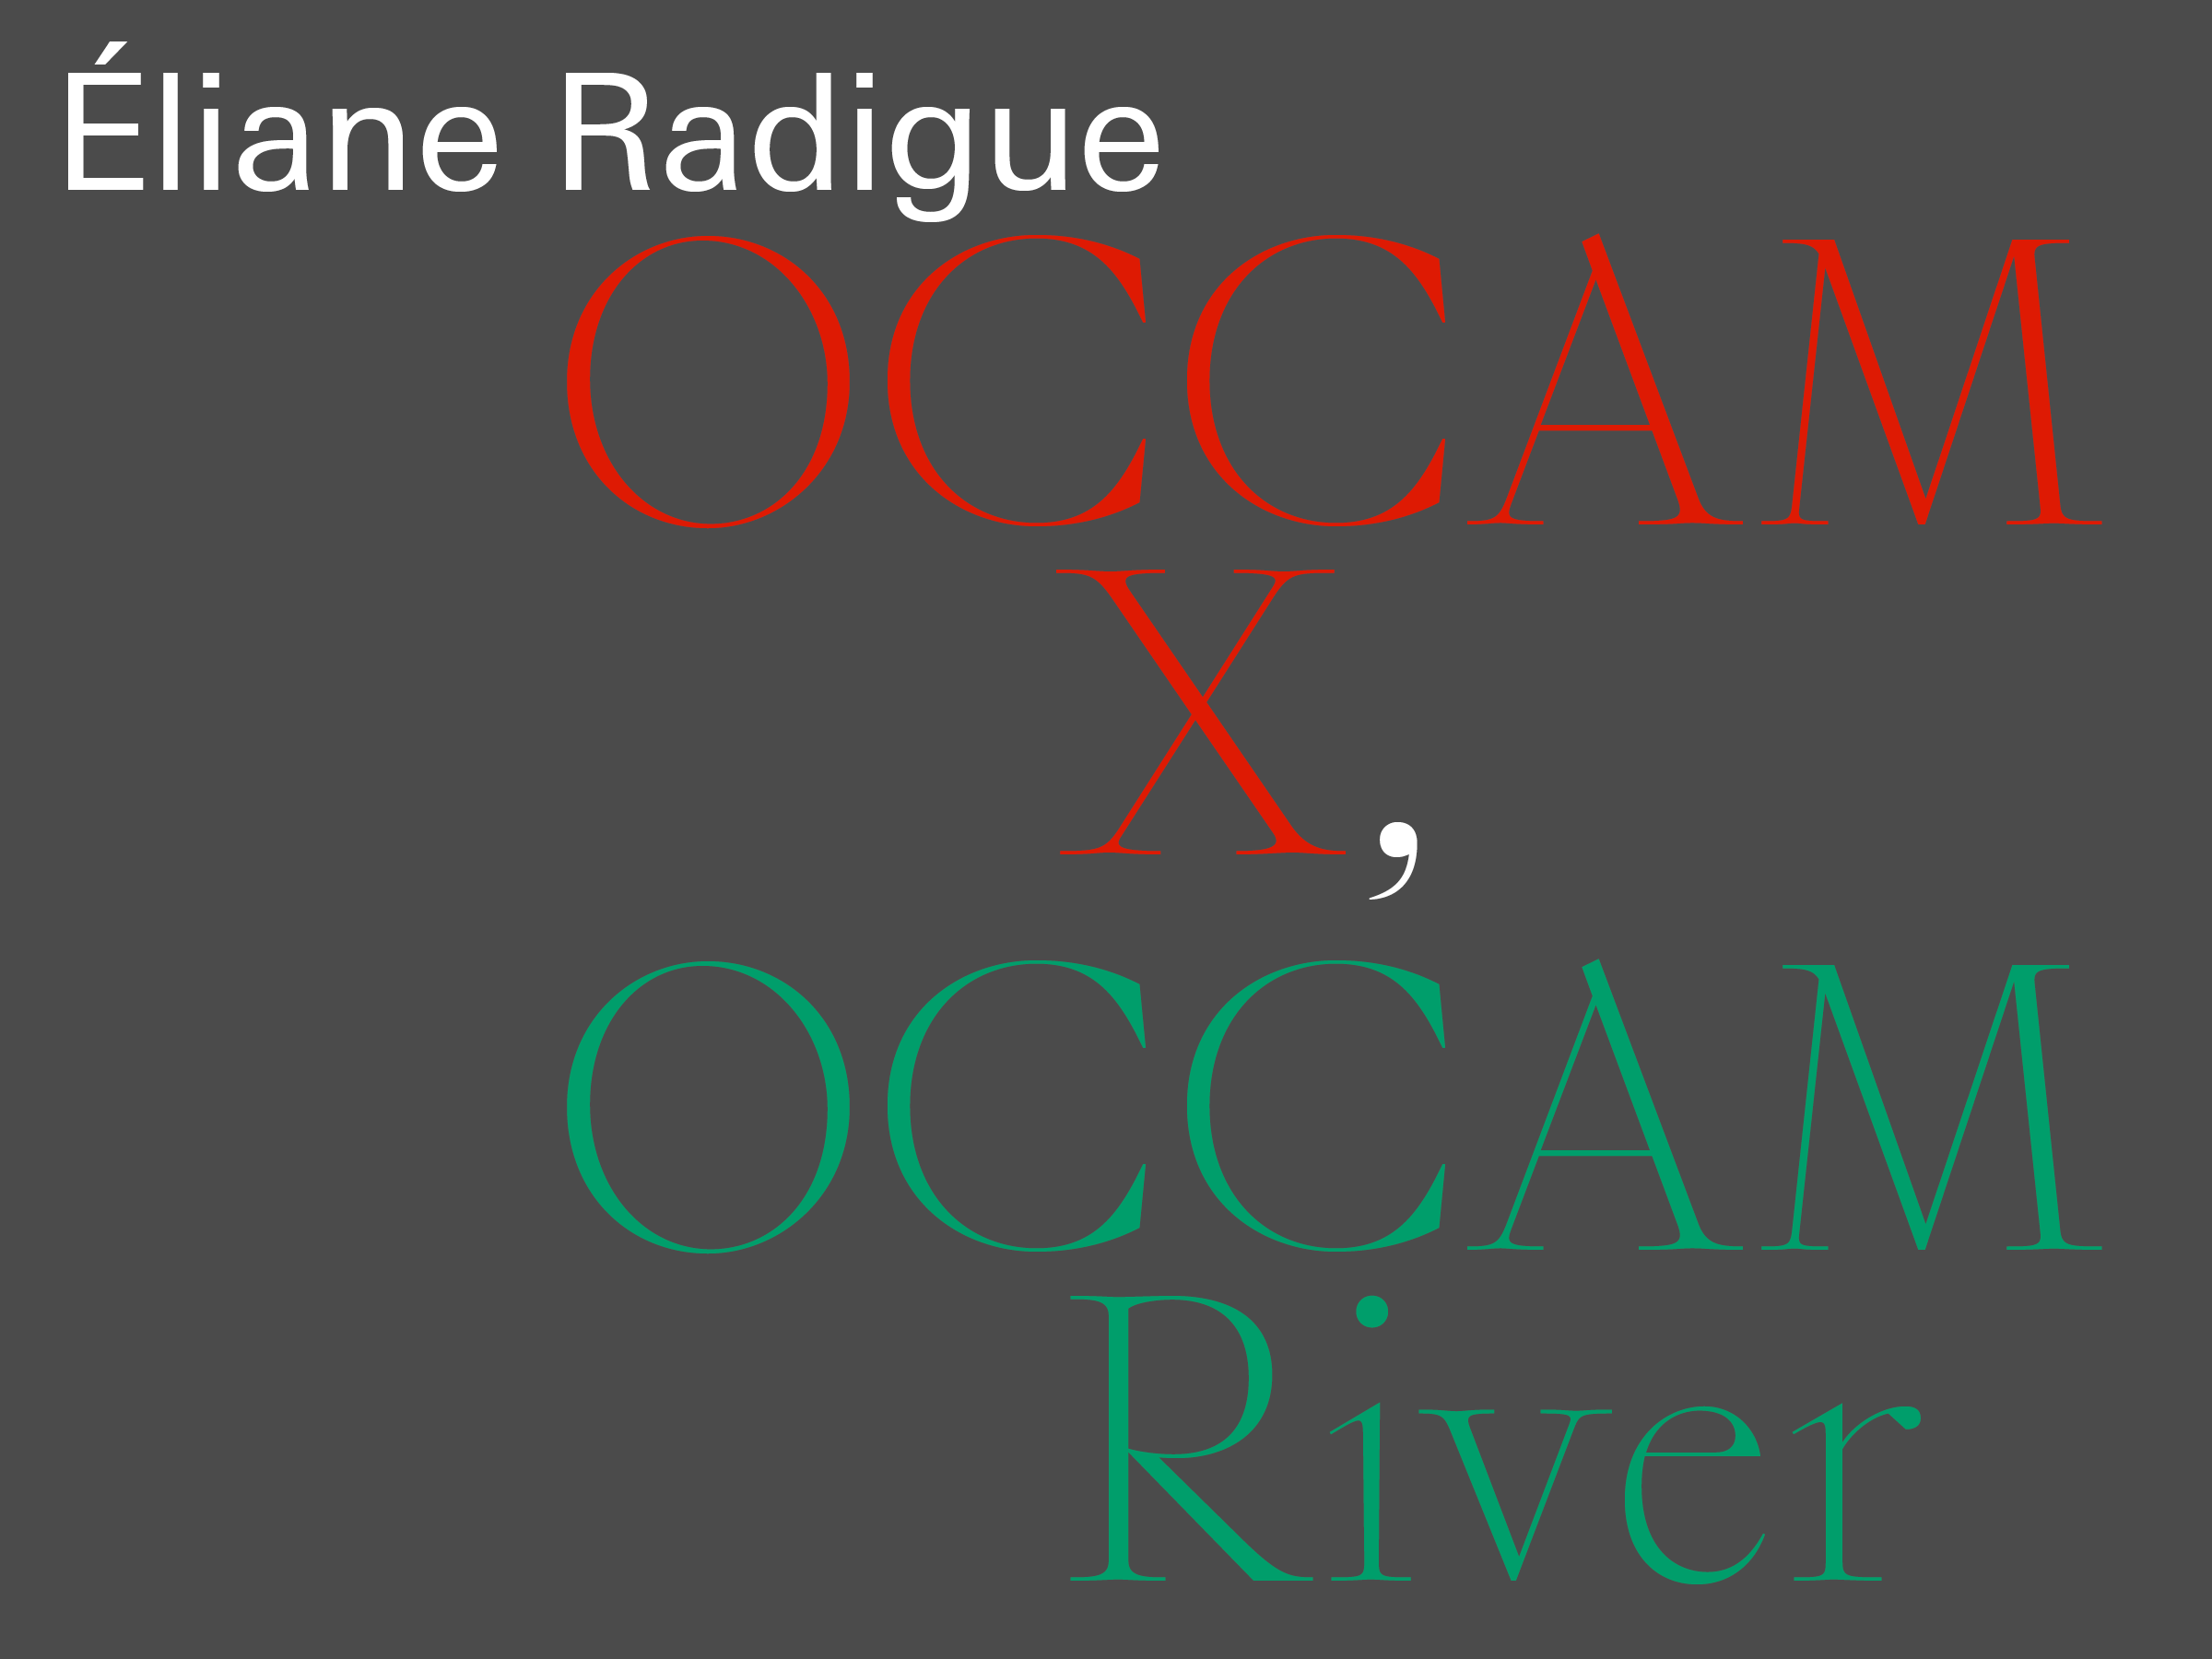 Radigue: Occam X, Occam River